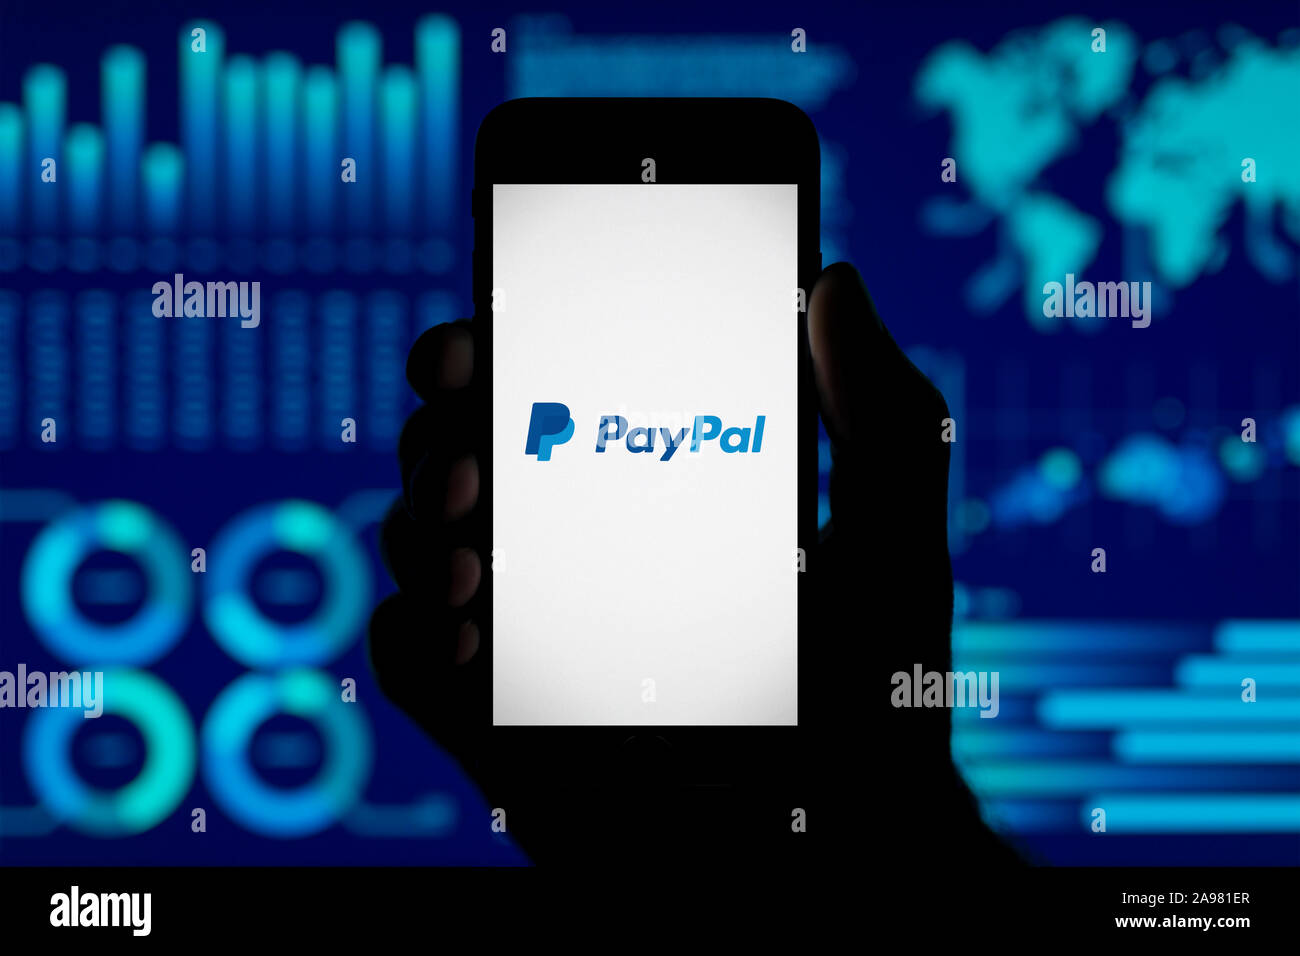 Ein Mann hält ein iPhone, das zeigt das PayPal Logo, Schuß gegen eine Visualisierung von Daten im Hintergrund (nur redaktionelle Nutzung). Stockfoto